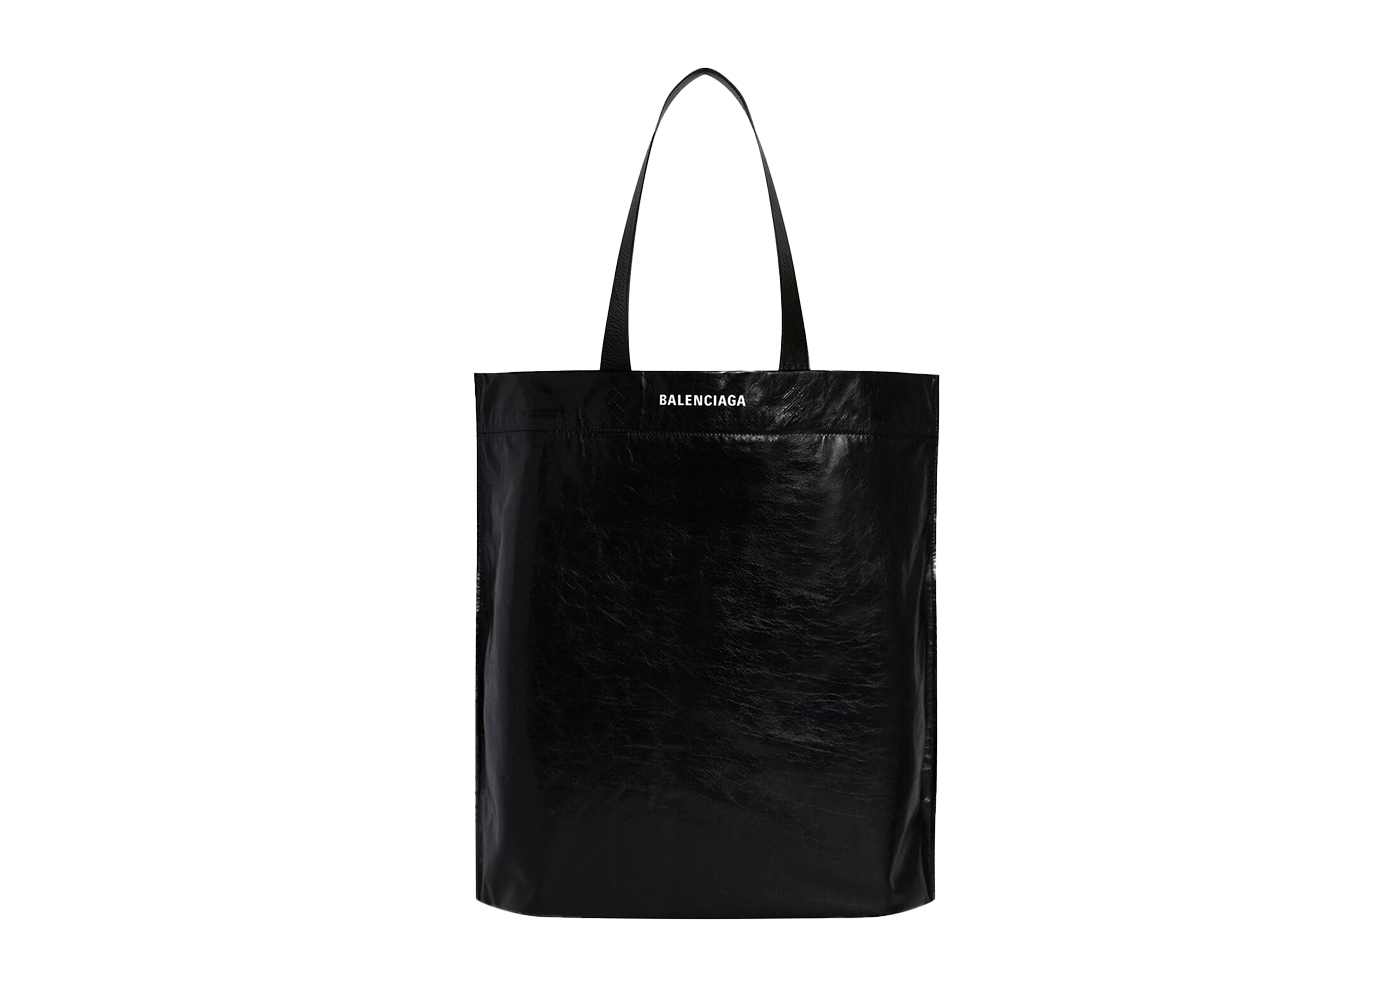 Balenciaga x The Simpsons Shopper Shoulder Tote Bag Medium Black